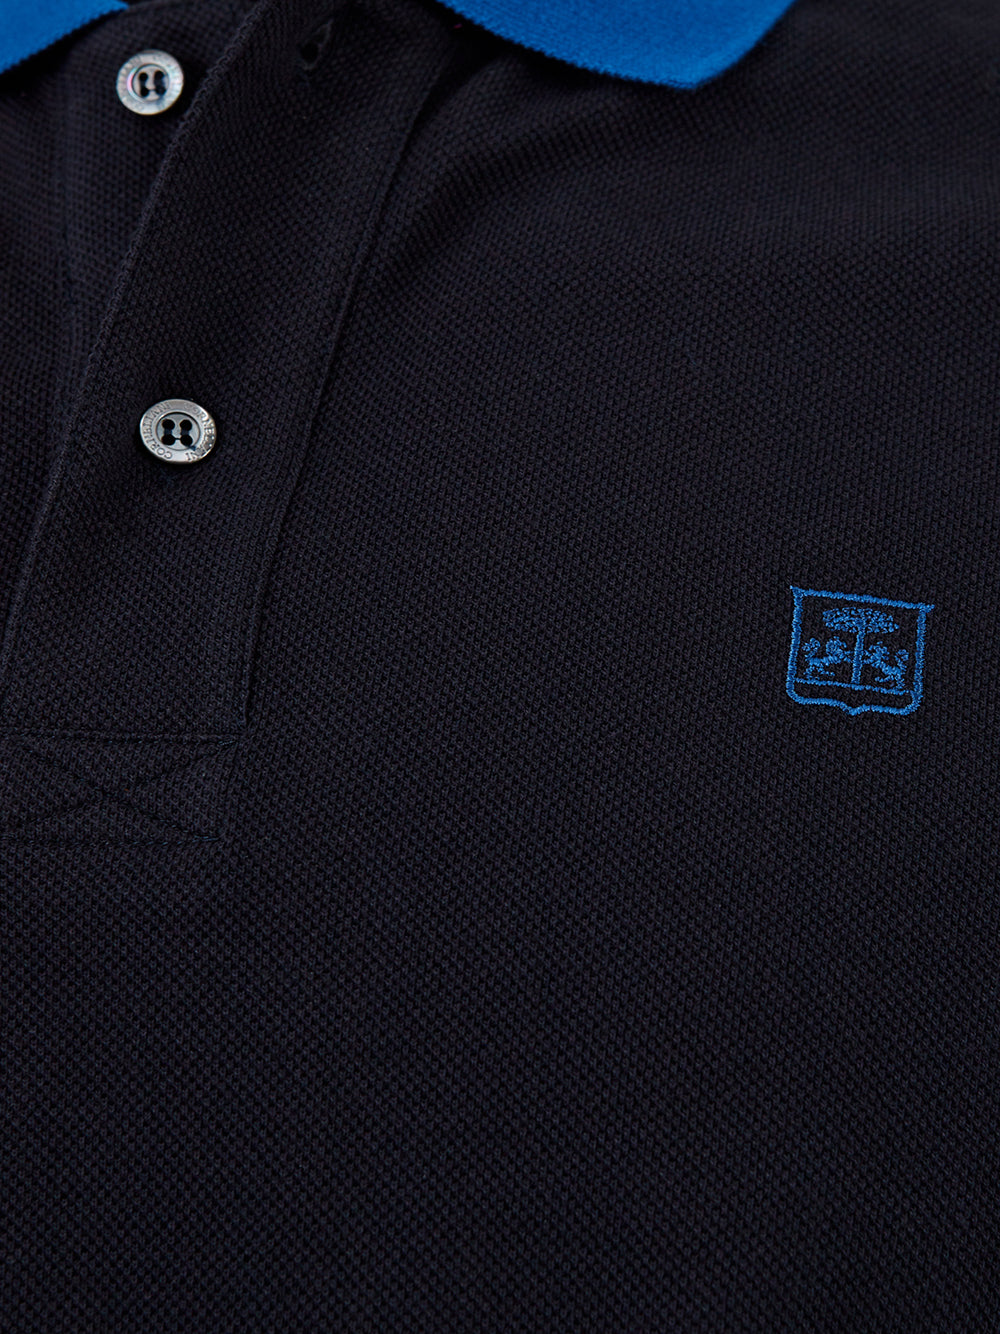 Polo in cotone Piquet Blu Navy